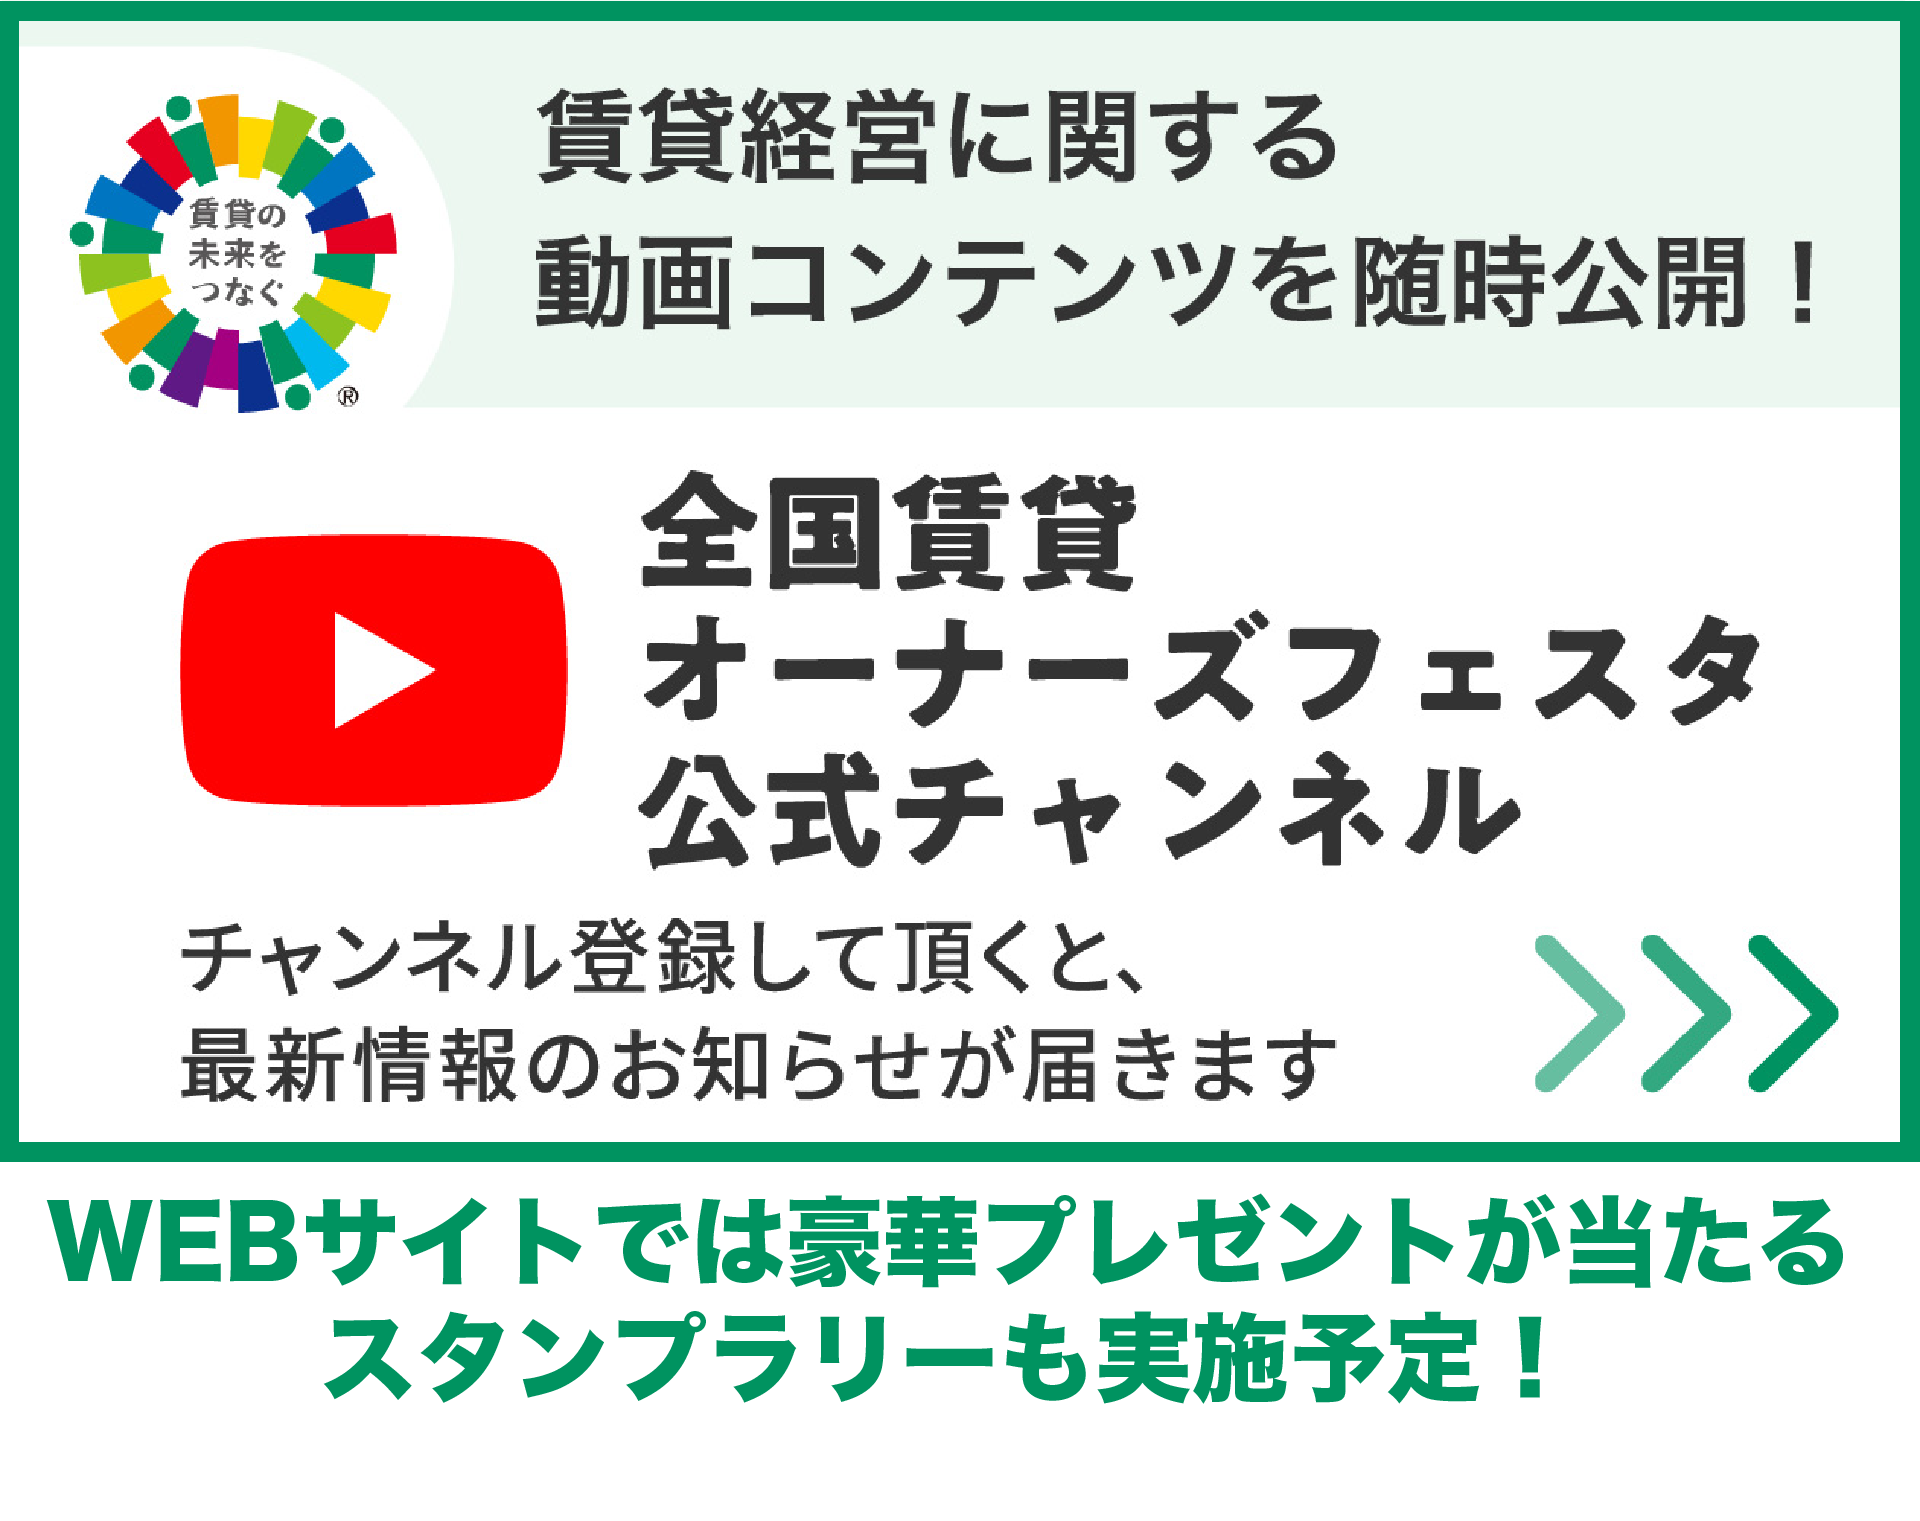 エイブルオンラインフェスタ_WEB・Youtube2